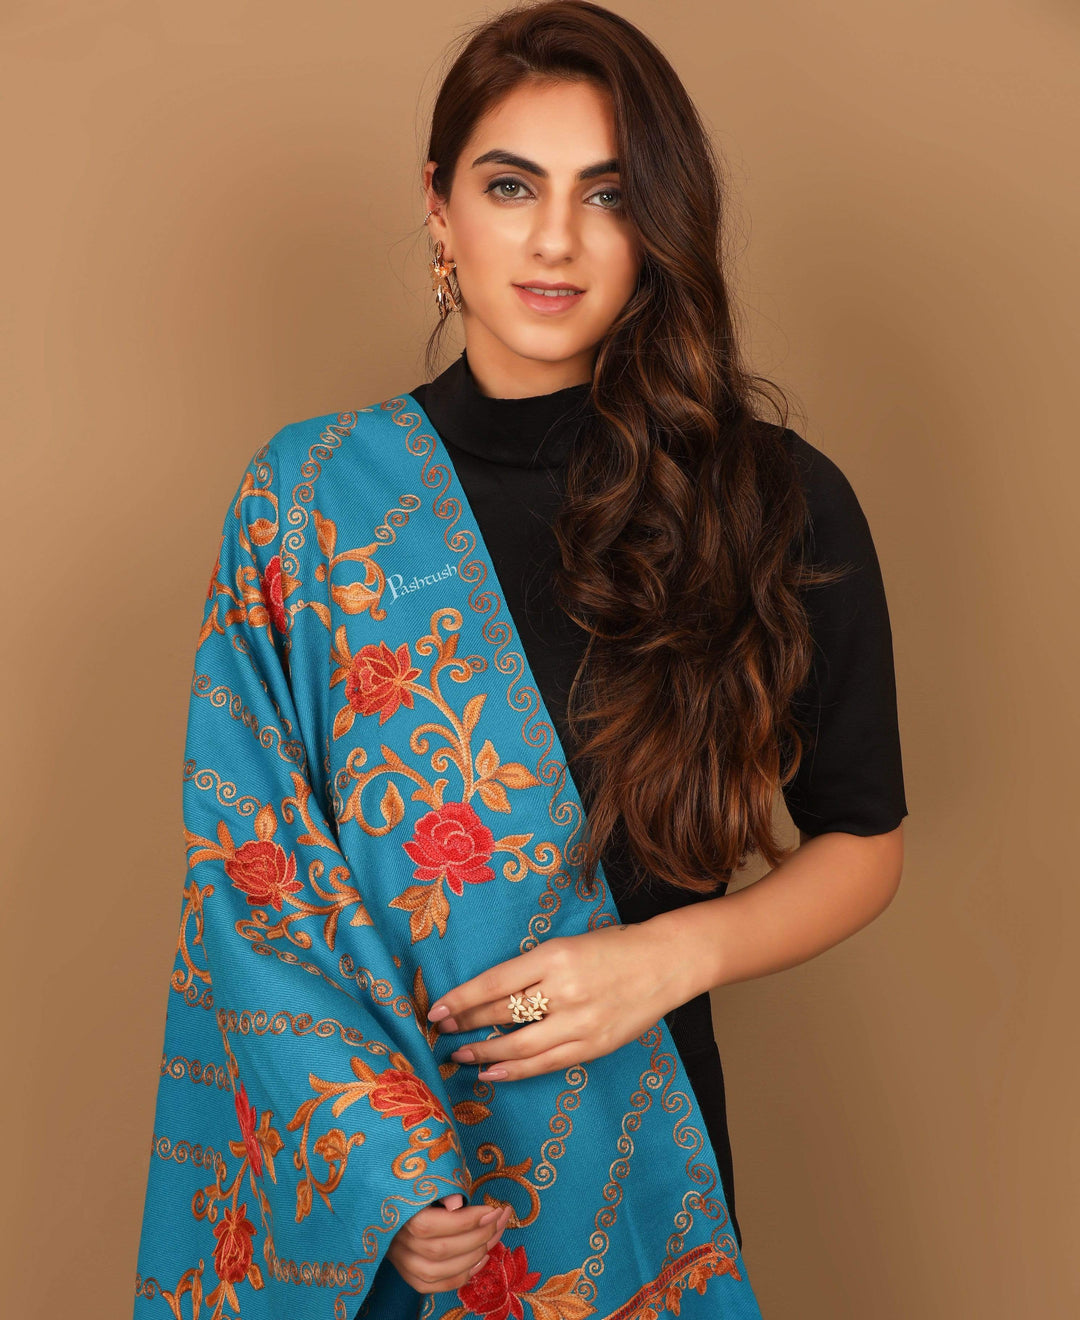 Pashtush India 70x200 Pashtush Kashmiri Aari Embroidery Stole, Fine Wool, Blue